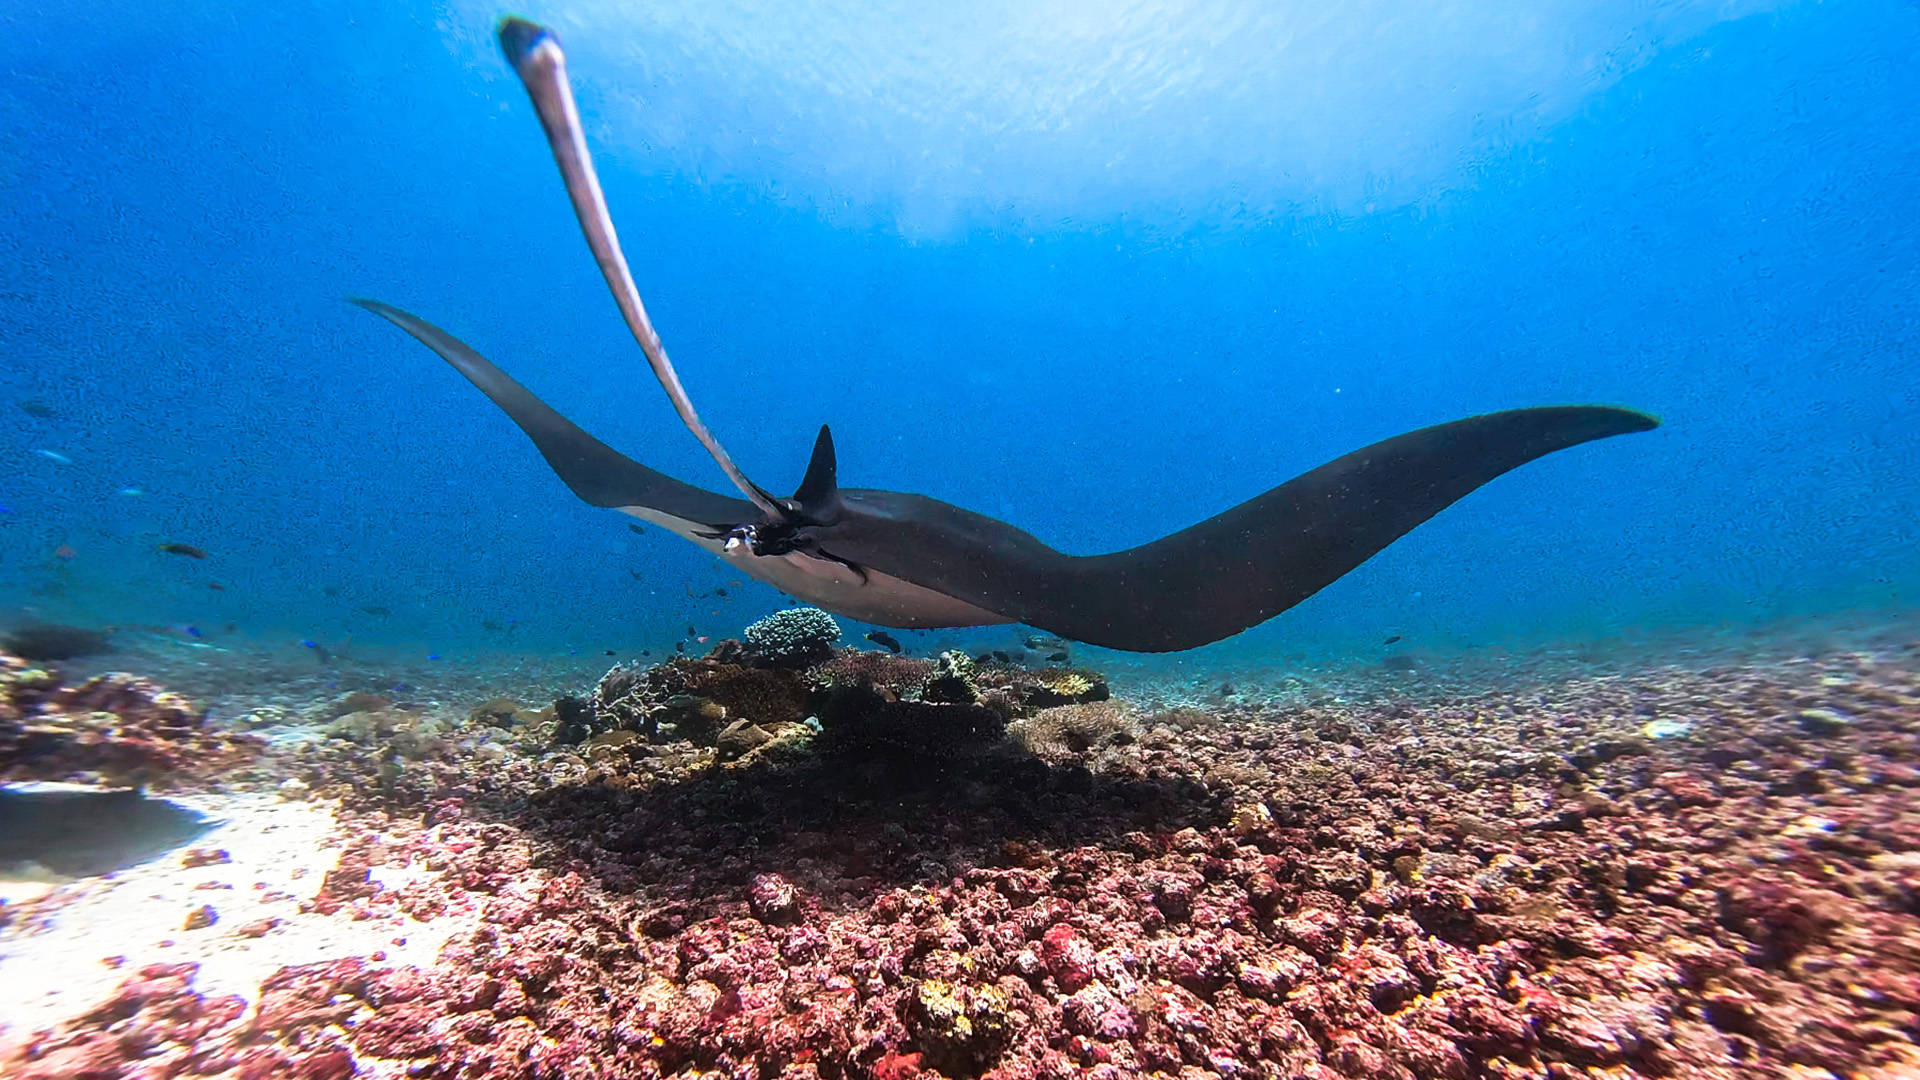 原创在印度尼西亚潜水看魔鬼鱼群这里是科莫多的著名潜点mantapoint